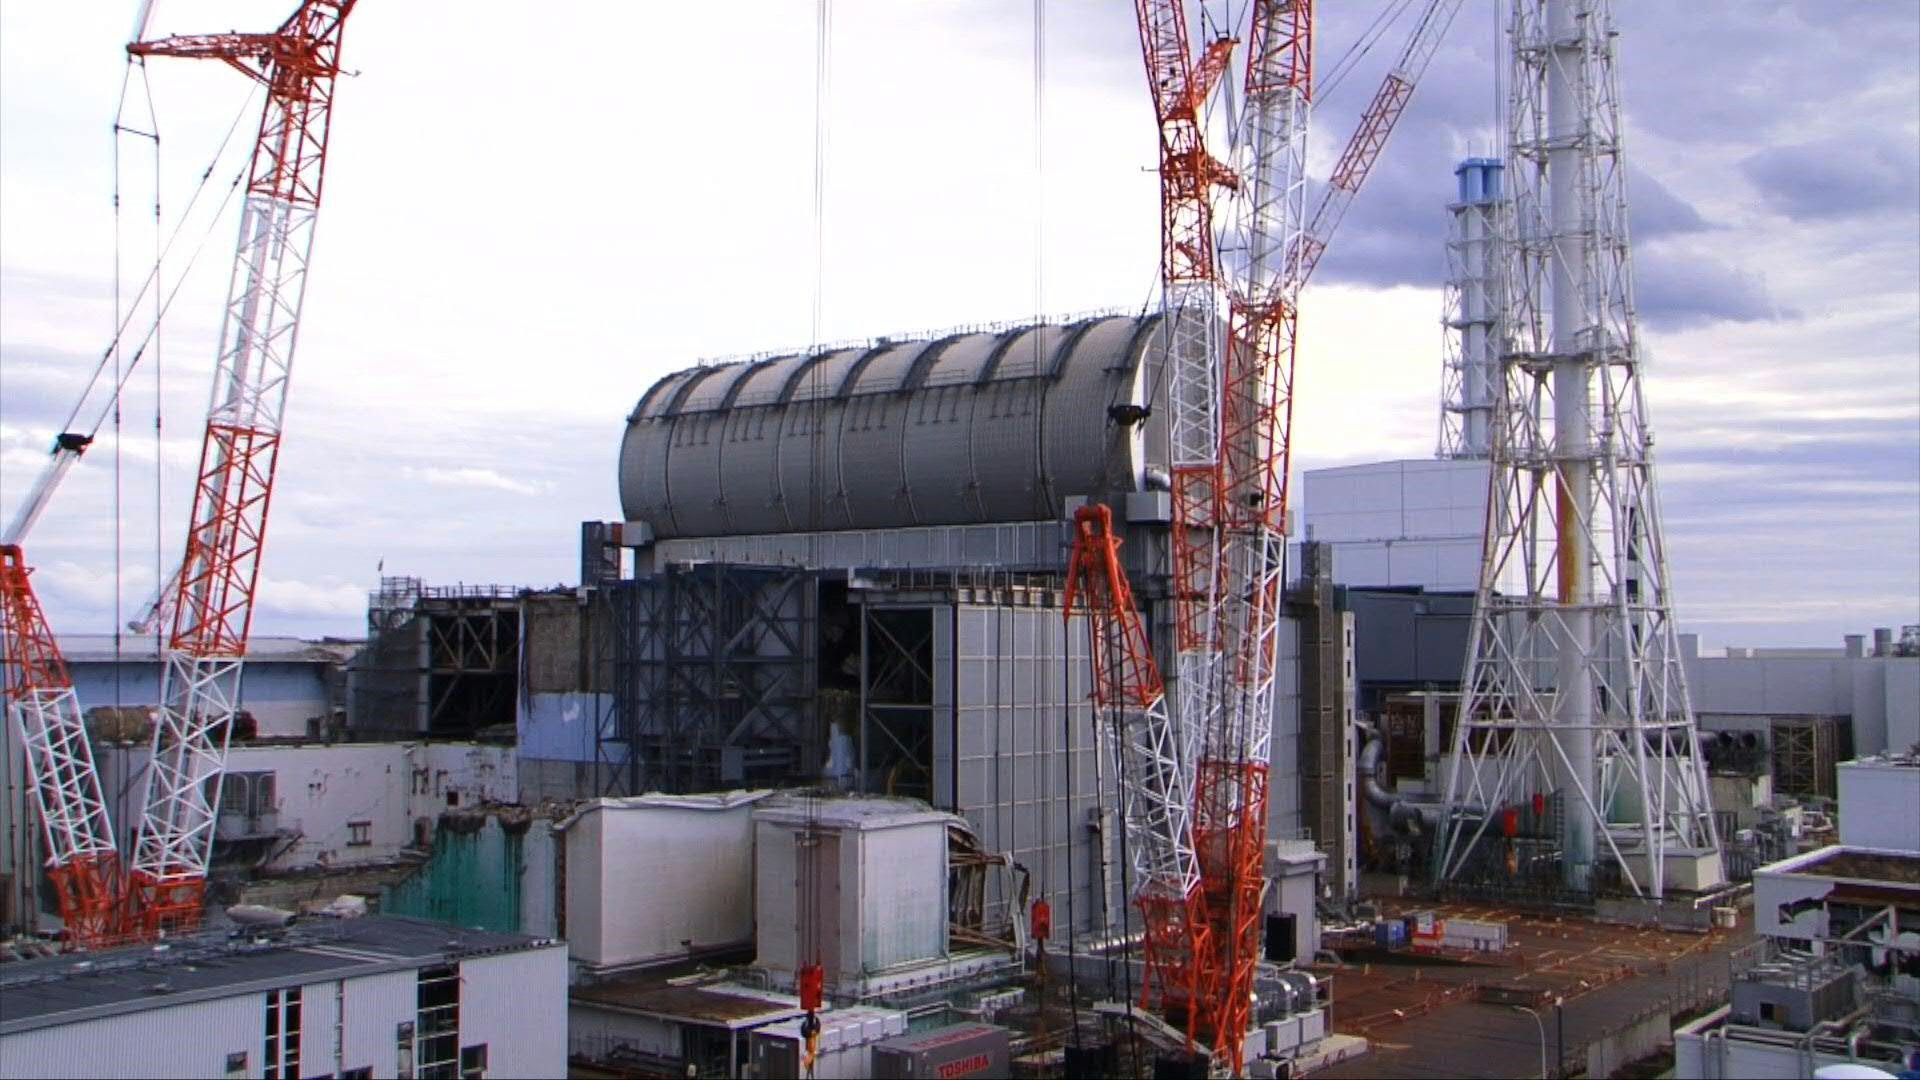 De momento, los reactores que se han reactivado son de agua a presión. El de Shimane, en cambio, es de agua en ebullición, el mismo tipo que los que sufrieron fusiones parciales en la central de Fukushima tras el terremoto y tsunami de 2011